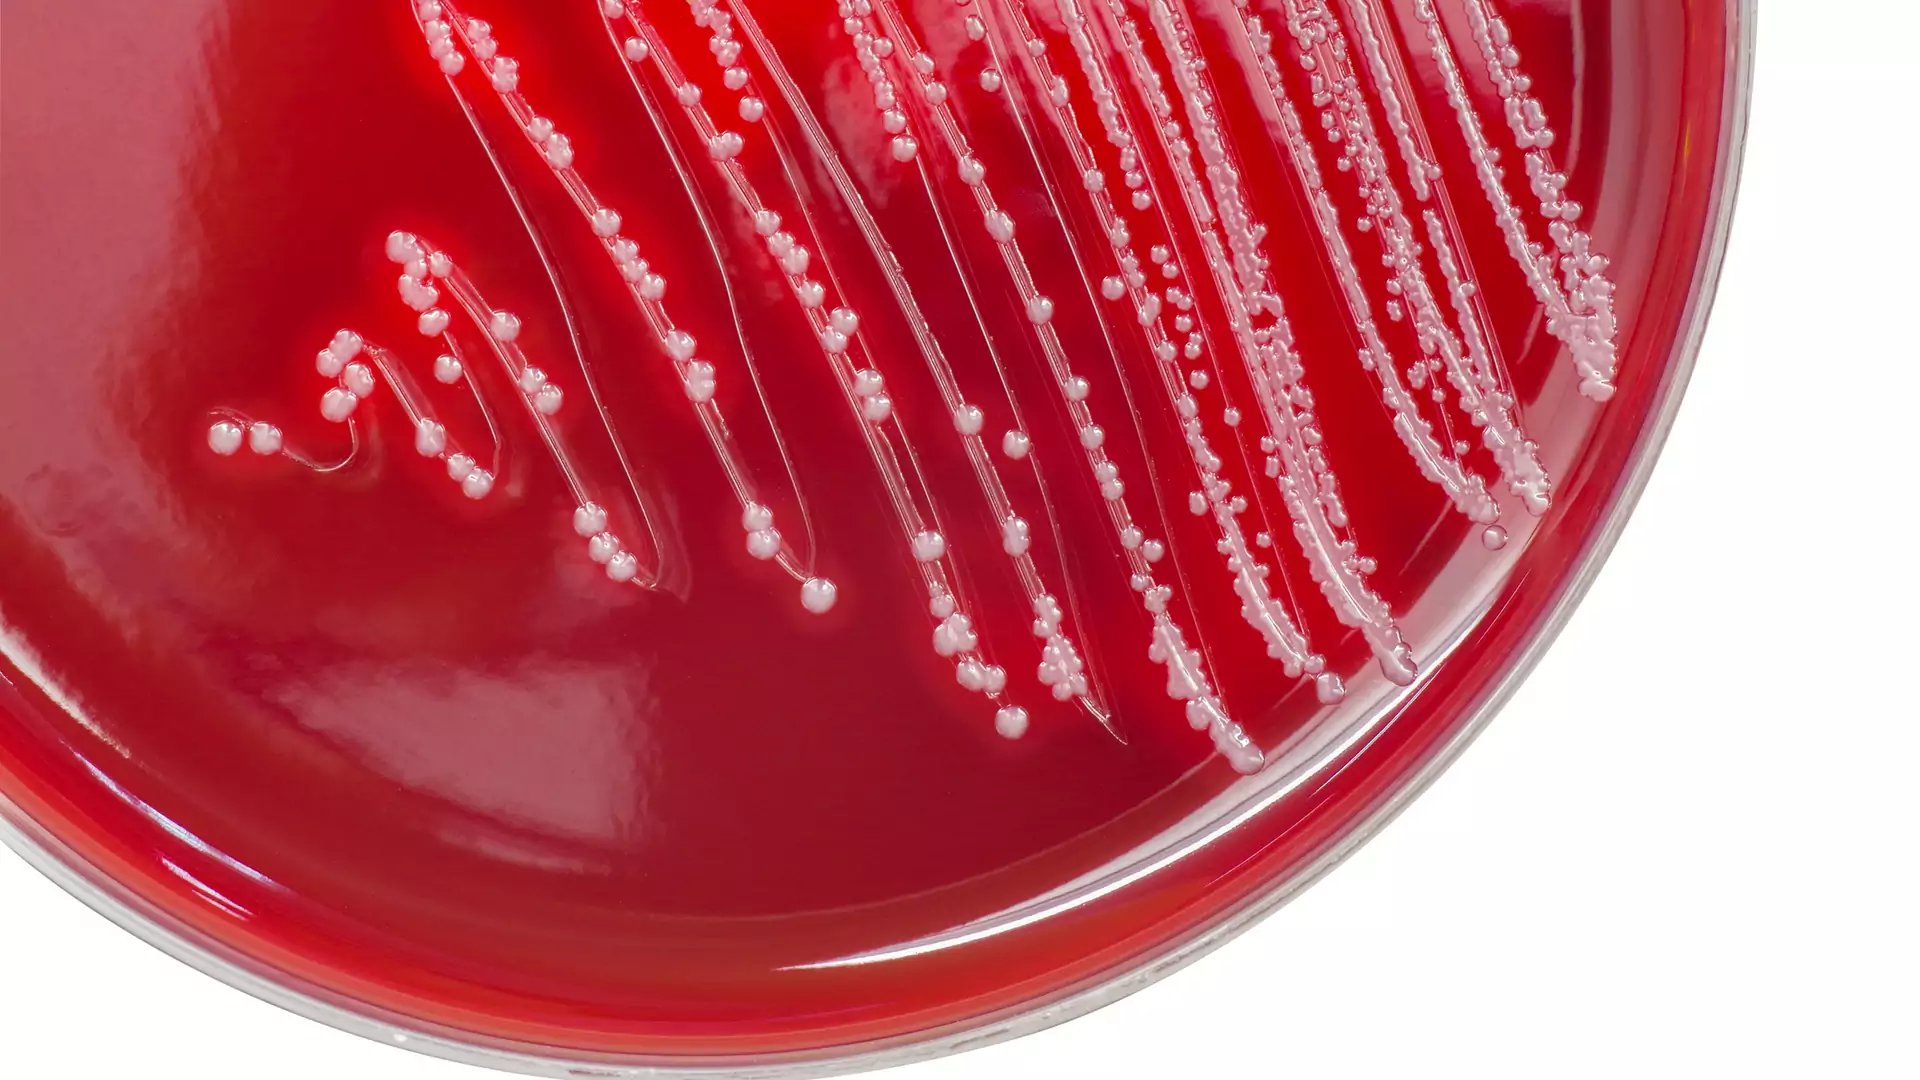 Paciorkowiec – bakteria powodująca poważne konsekwencje